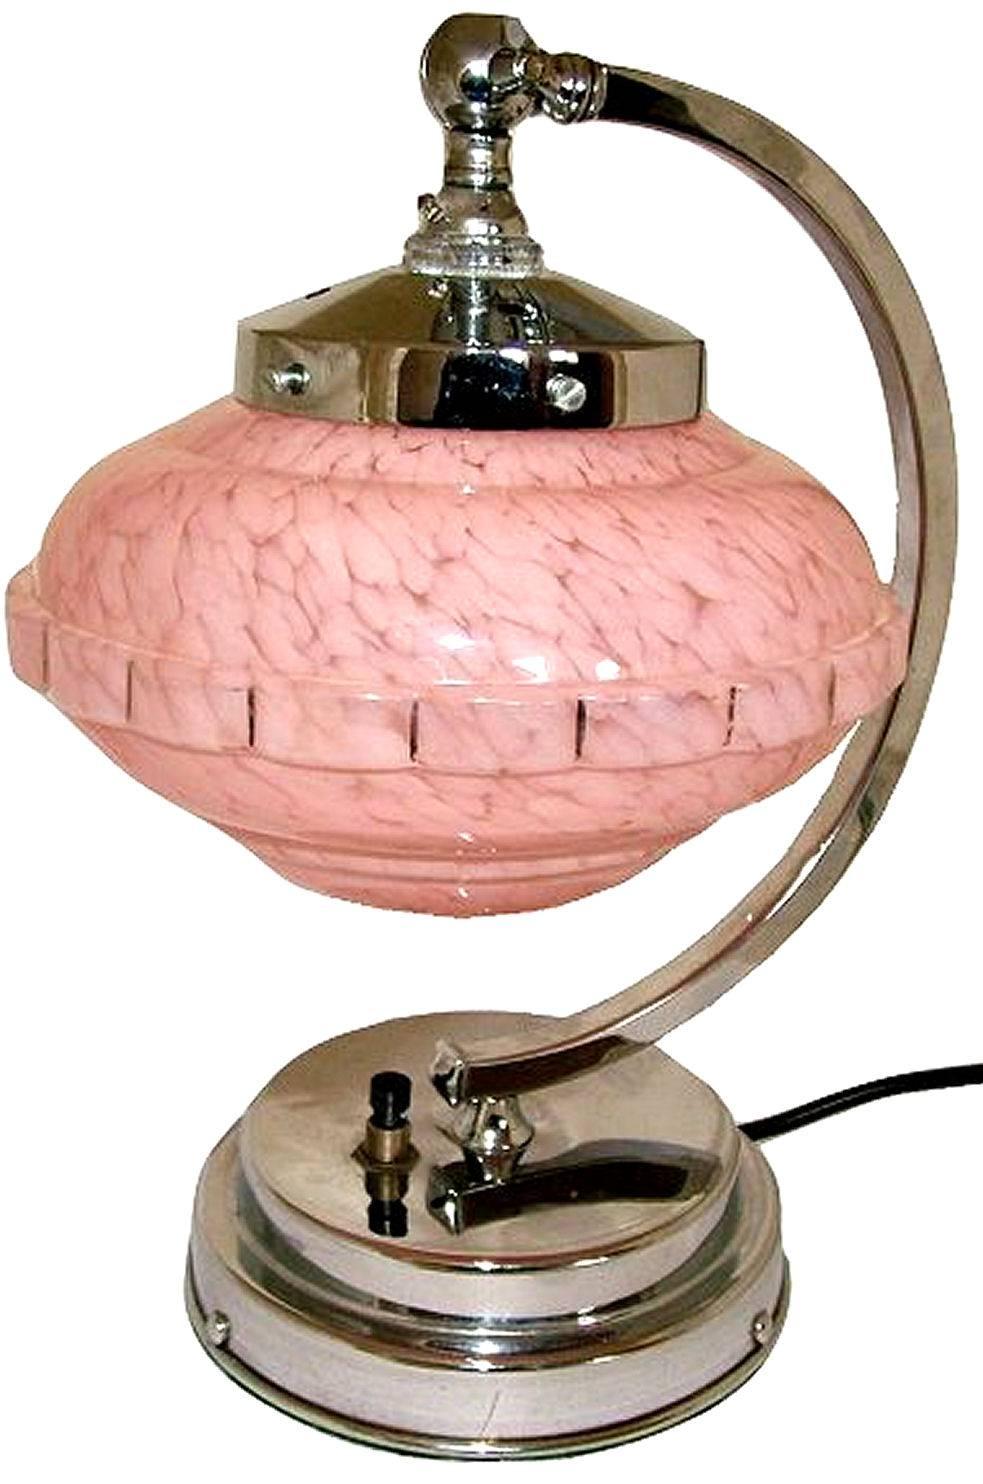 Lampe de table à angle droit Art Déco des années 1930 en chrome en très bon état de fonctionnement. Avec sa base en escalier et son abat-jour en verre à effet de marbre rose, ce luminaire est un véritable joyau iconique de l'Icone. L'abat-jour peut